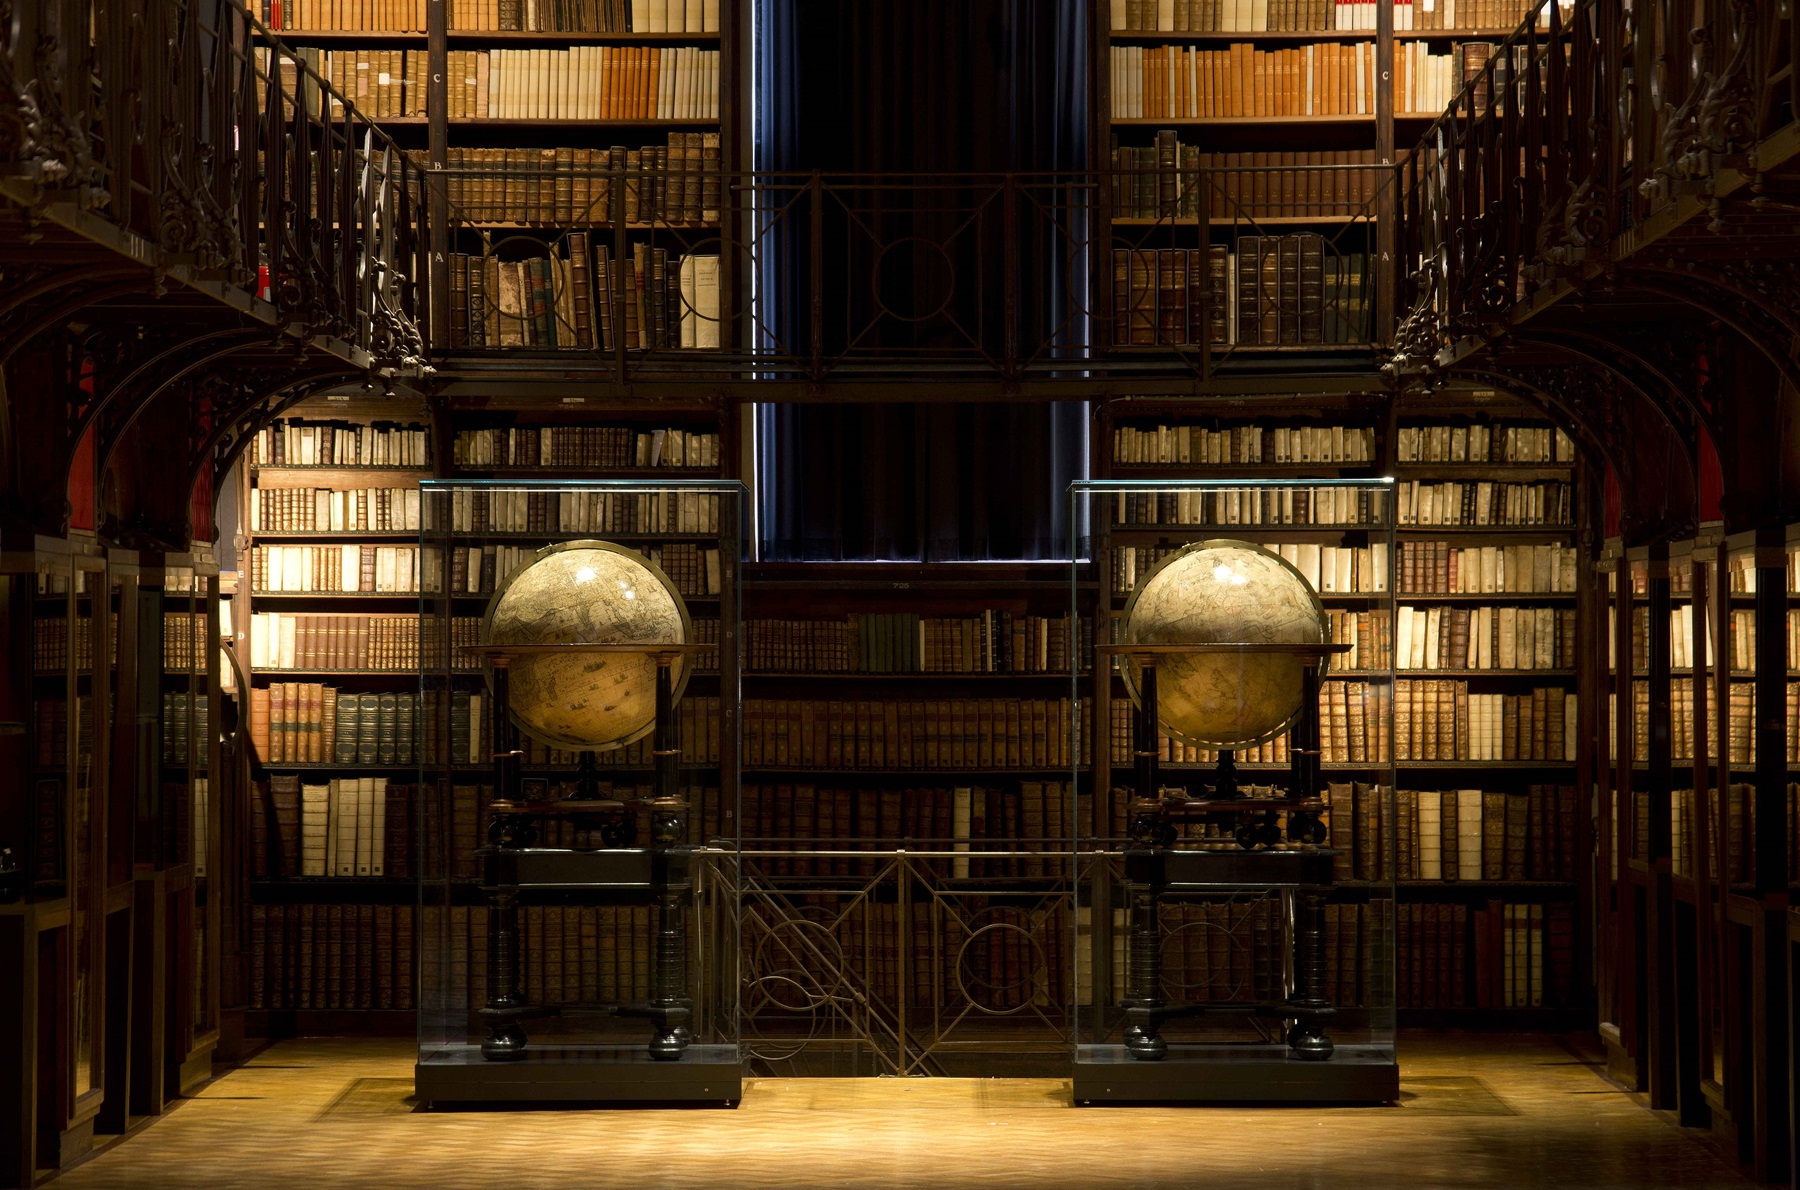 Bezoek aan de Erfgoedbibliotheek Hendrik Conscience | toegangsticket enkel in combinatie met een rondleiding